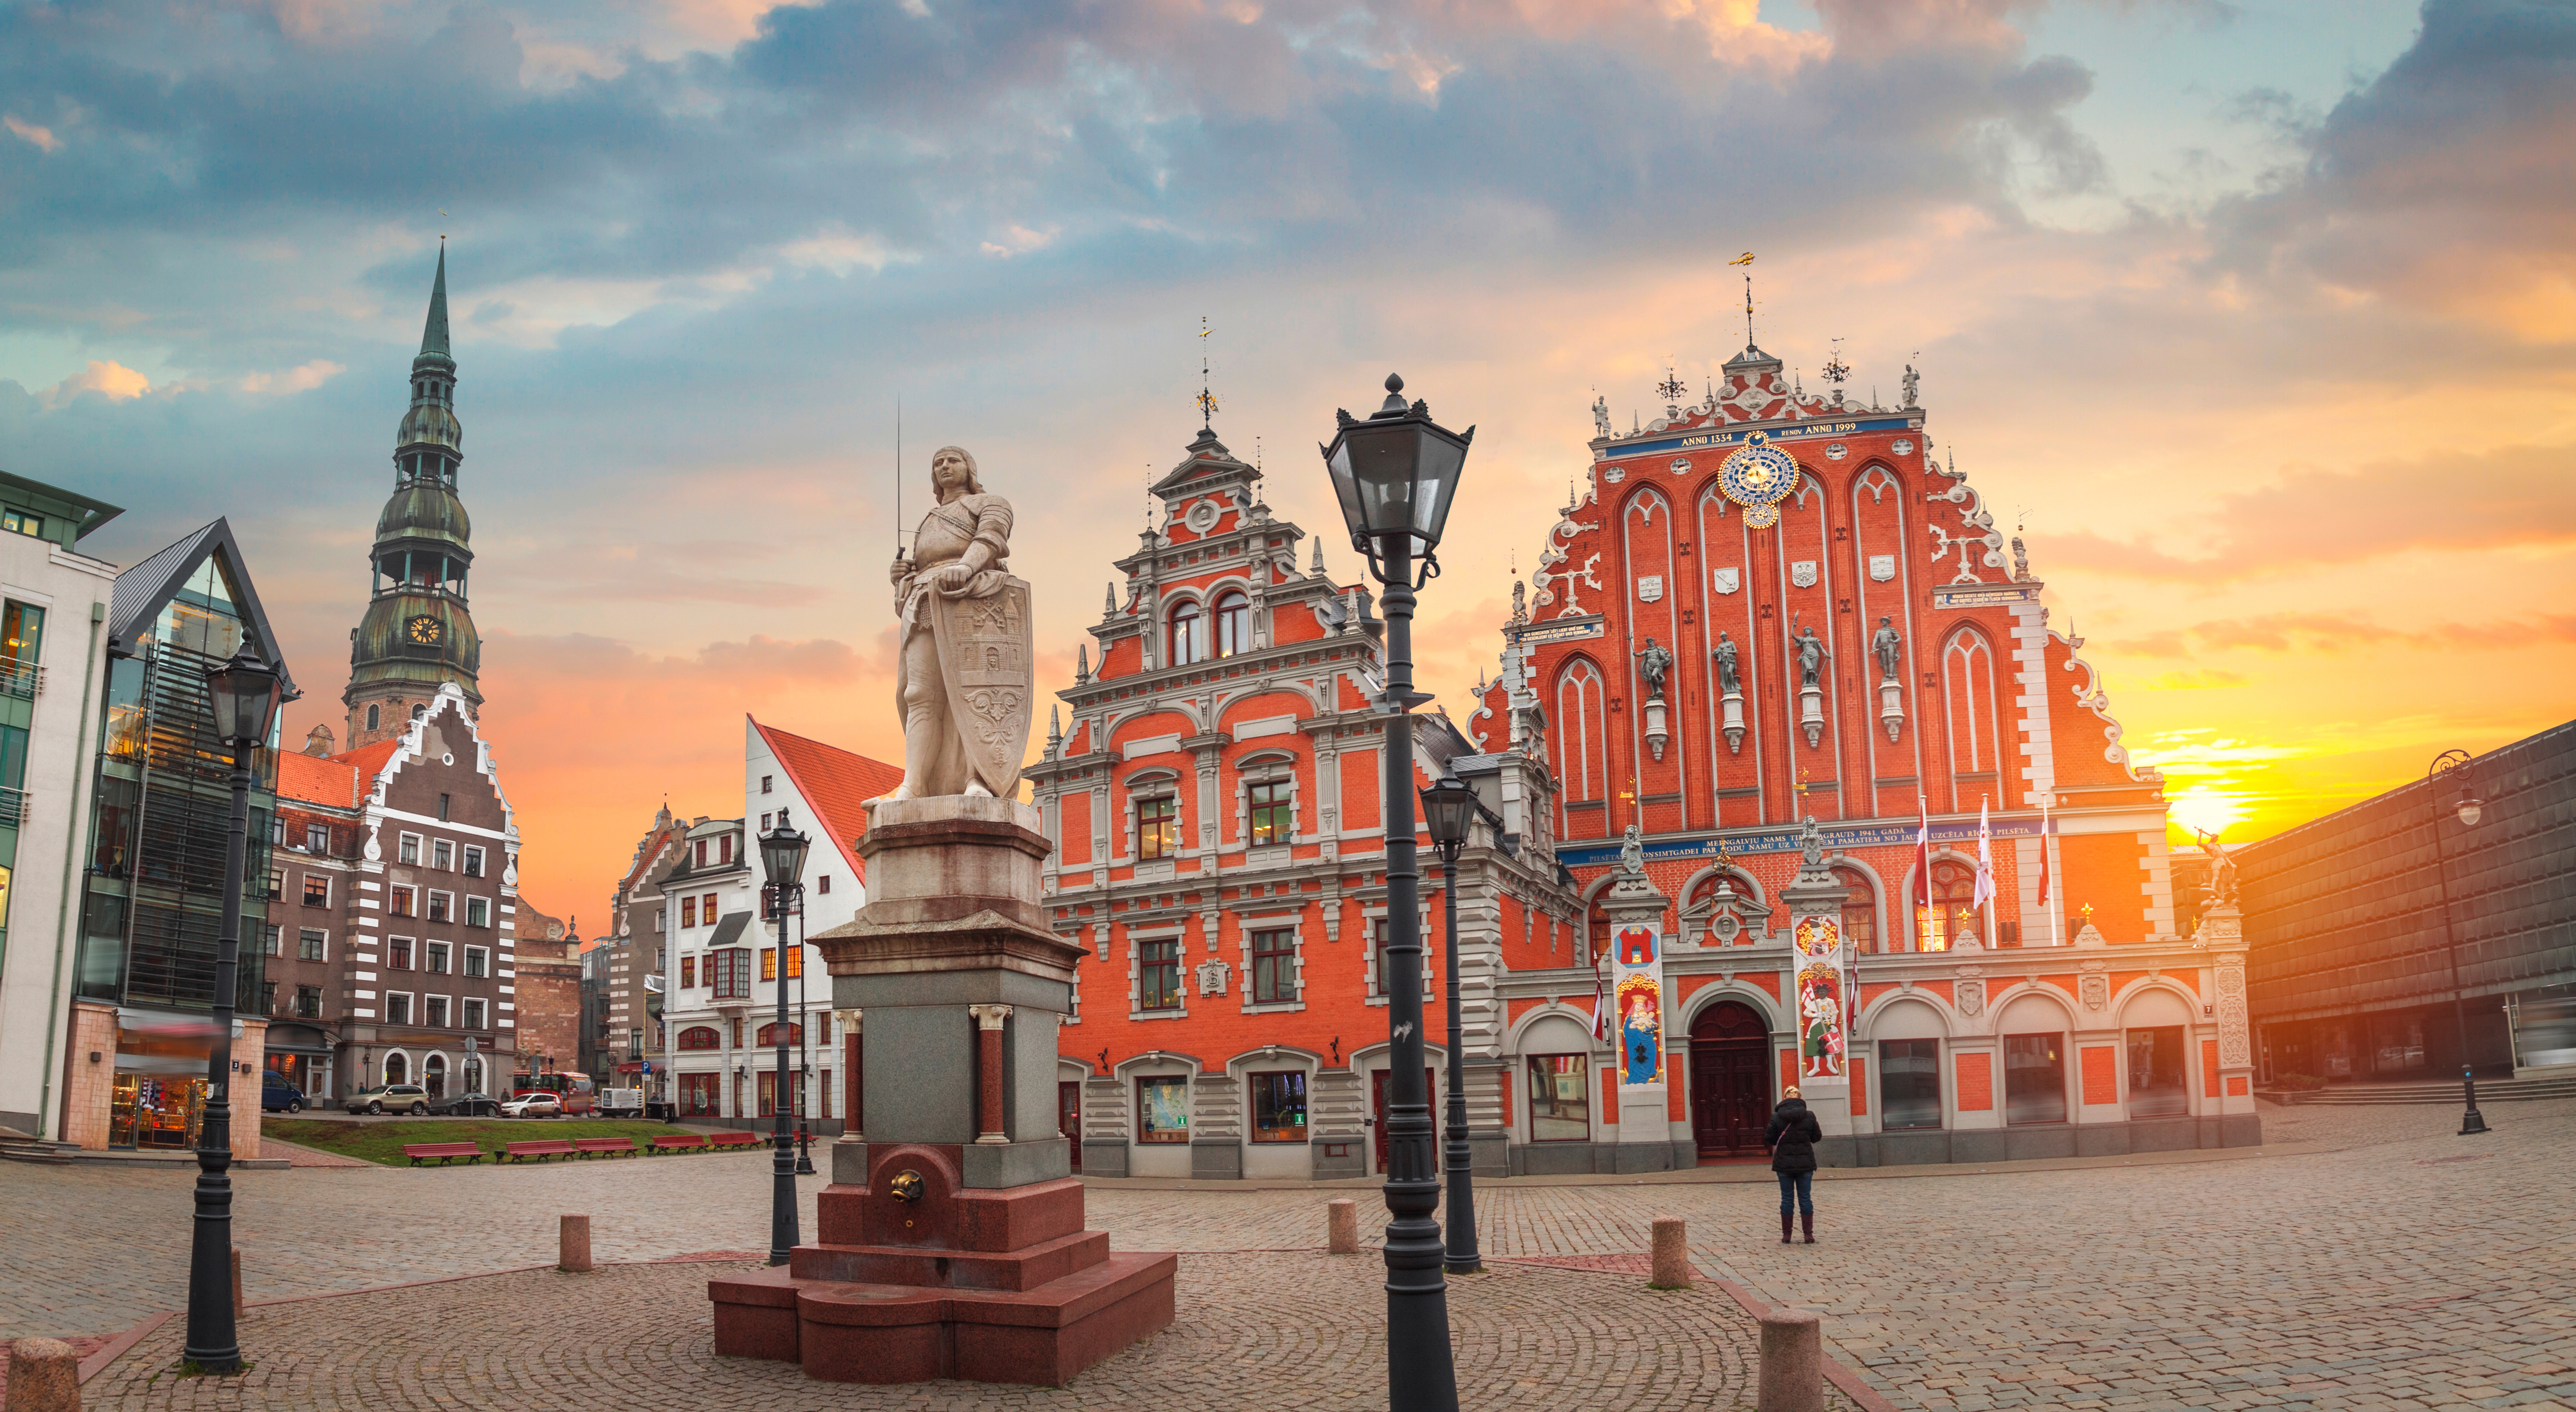 Центральная площадь в Риге, столице Латвии, куда можно переехать из стран СНГ